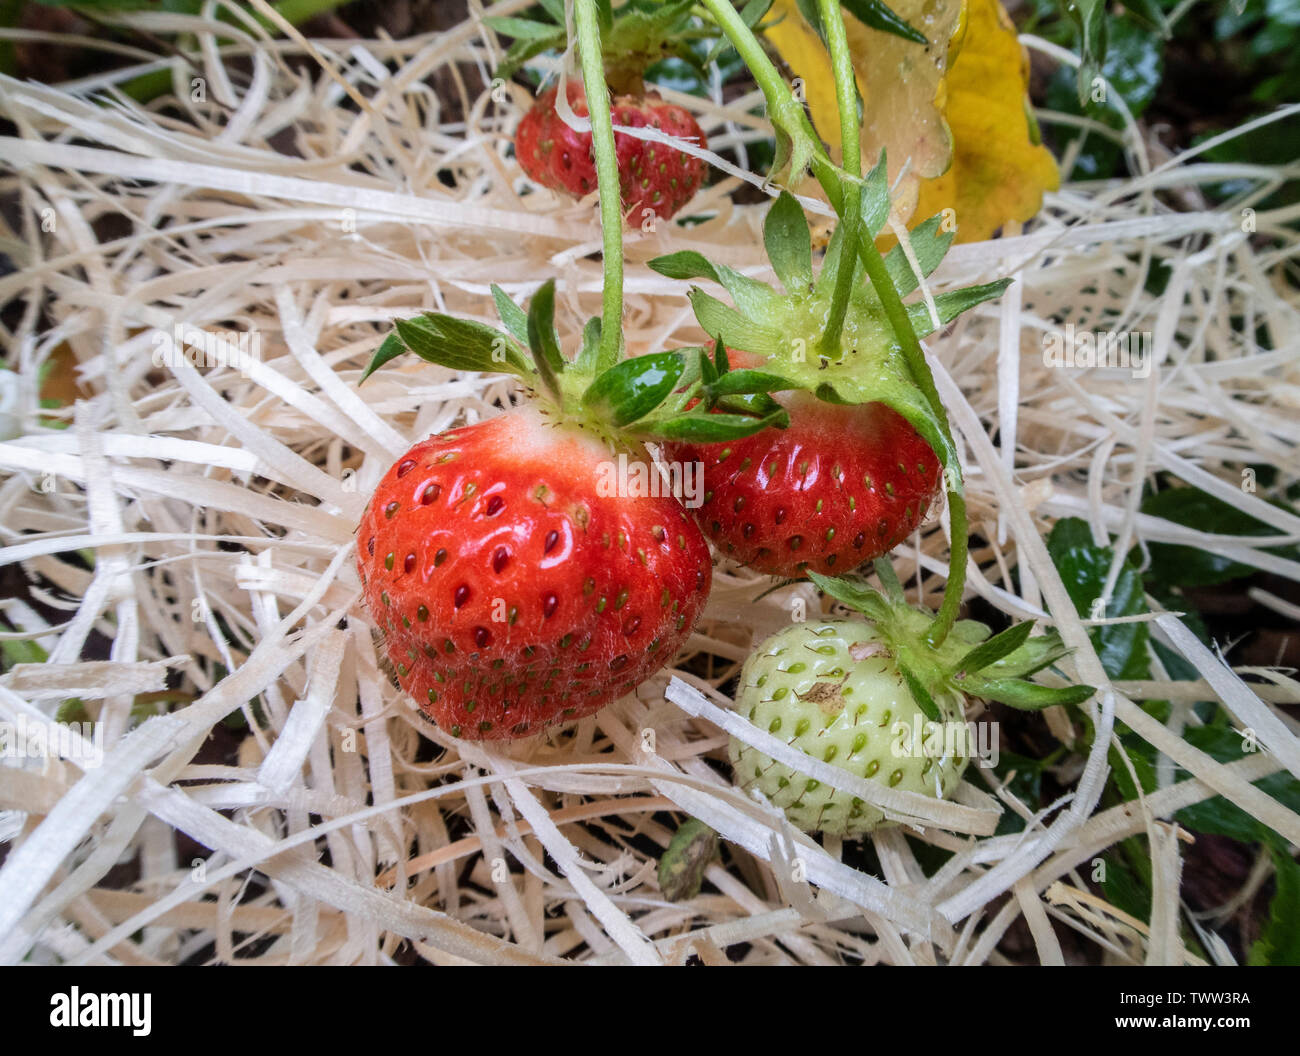 Erdbeere 'Cambridge' wächst auf einem Bett aus Stroh. Erdbeeren auf Stroh. Stockfoto